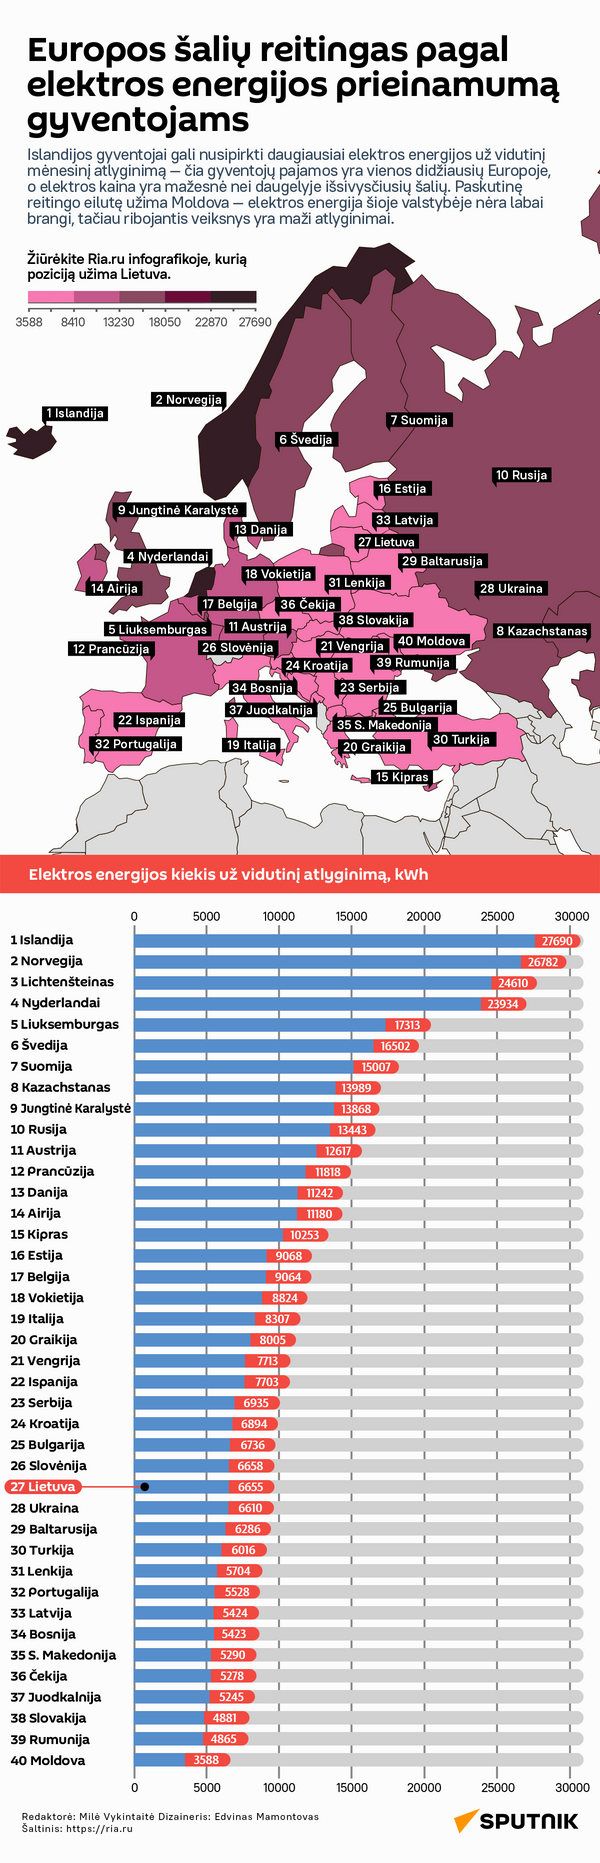 Europos šalių reitingas pagal elektros energijos prieinamumą gyventojams - Sputnik Lietuva